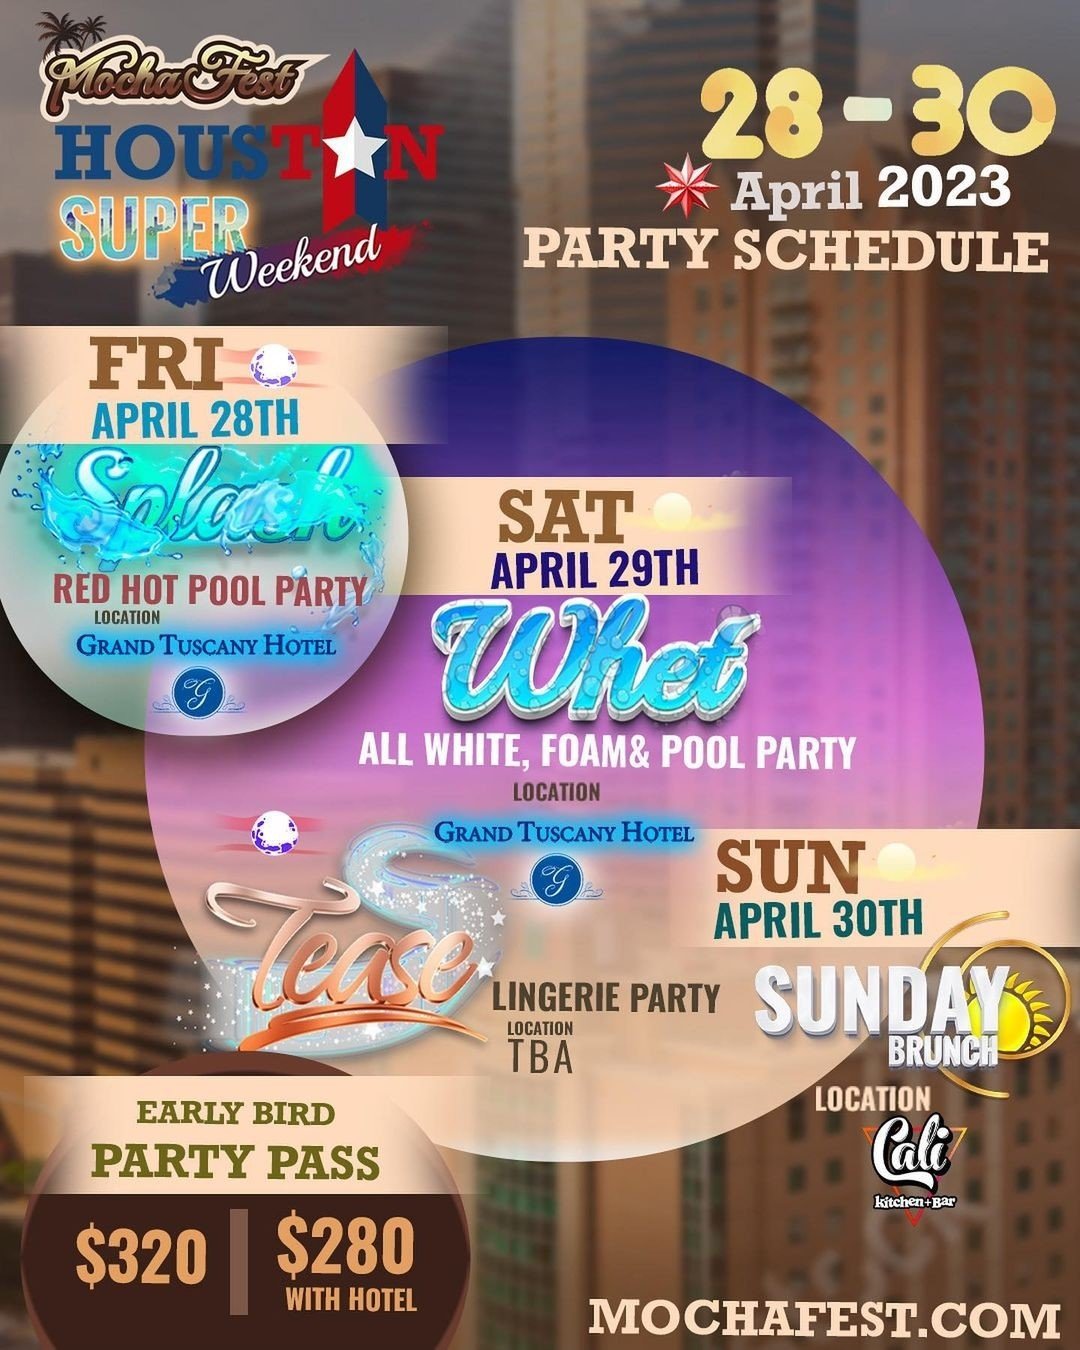 Mocha Fest Houston Super Weekend 2023 — DJ STAKZ